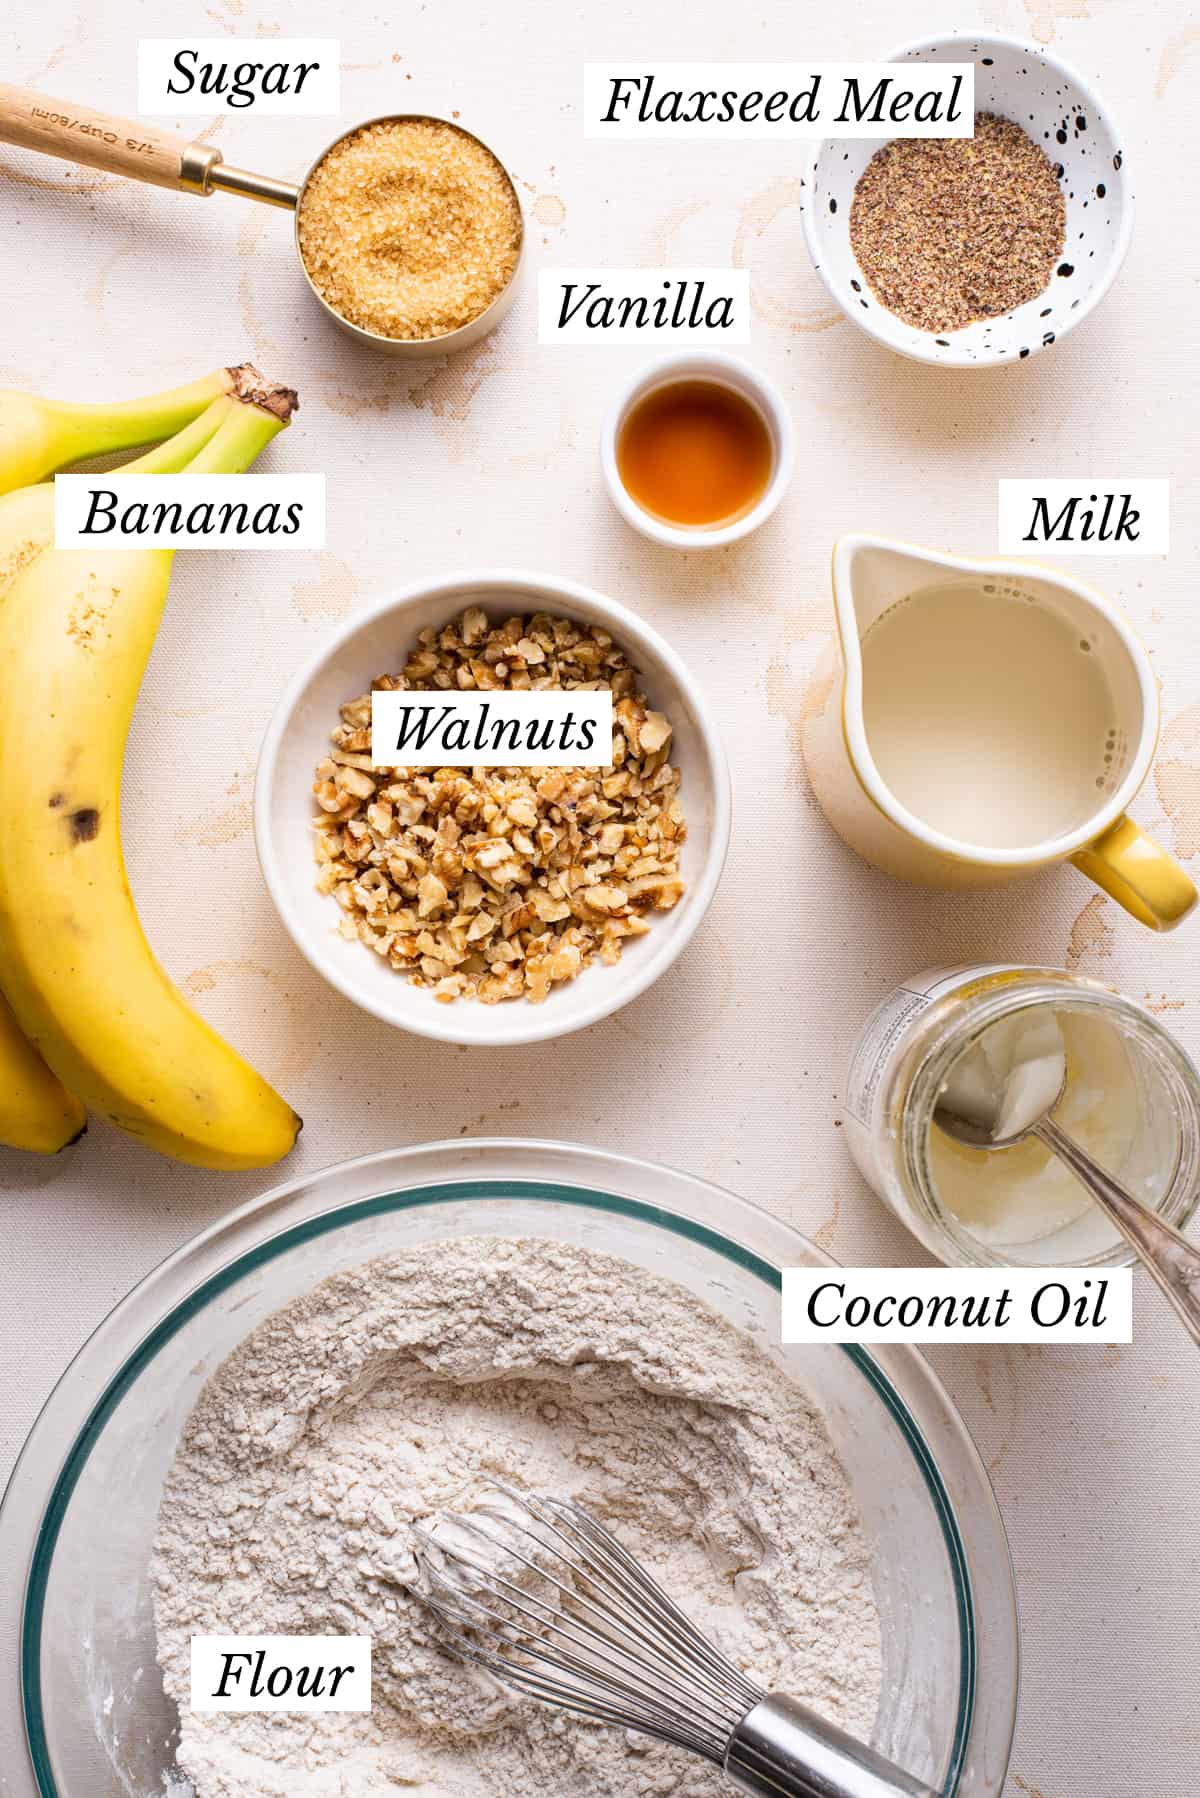 Ingredients gathered to make vegan banana bread.